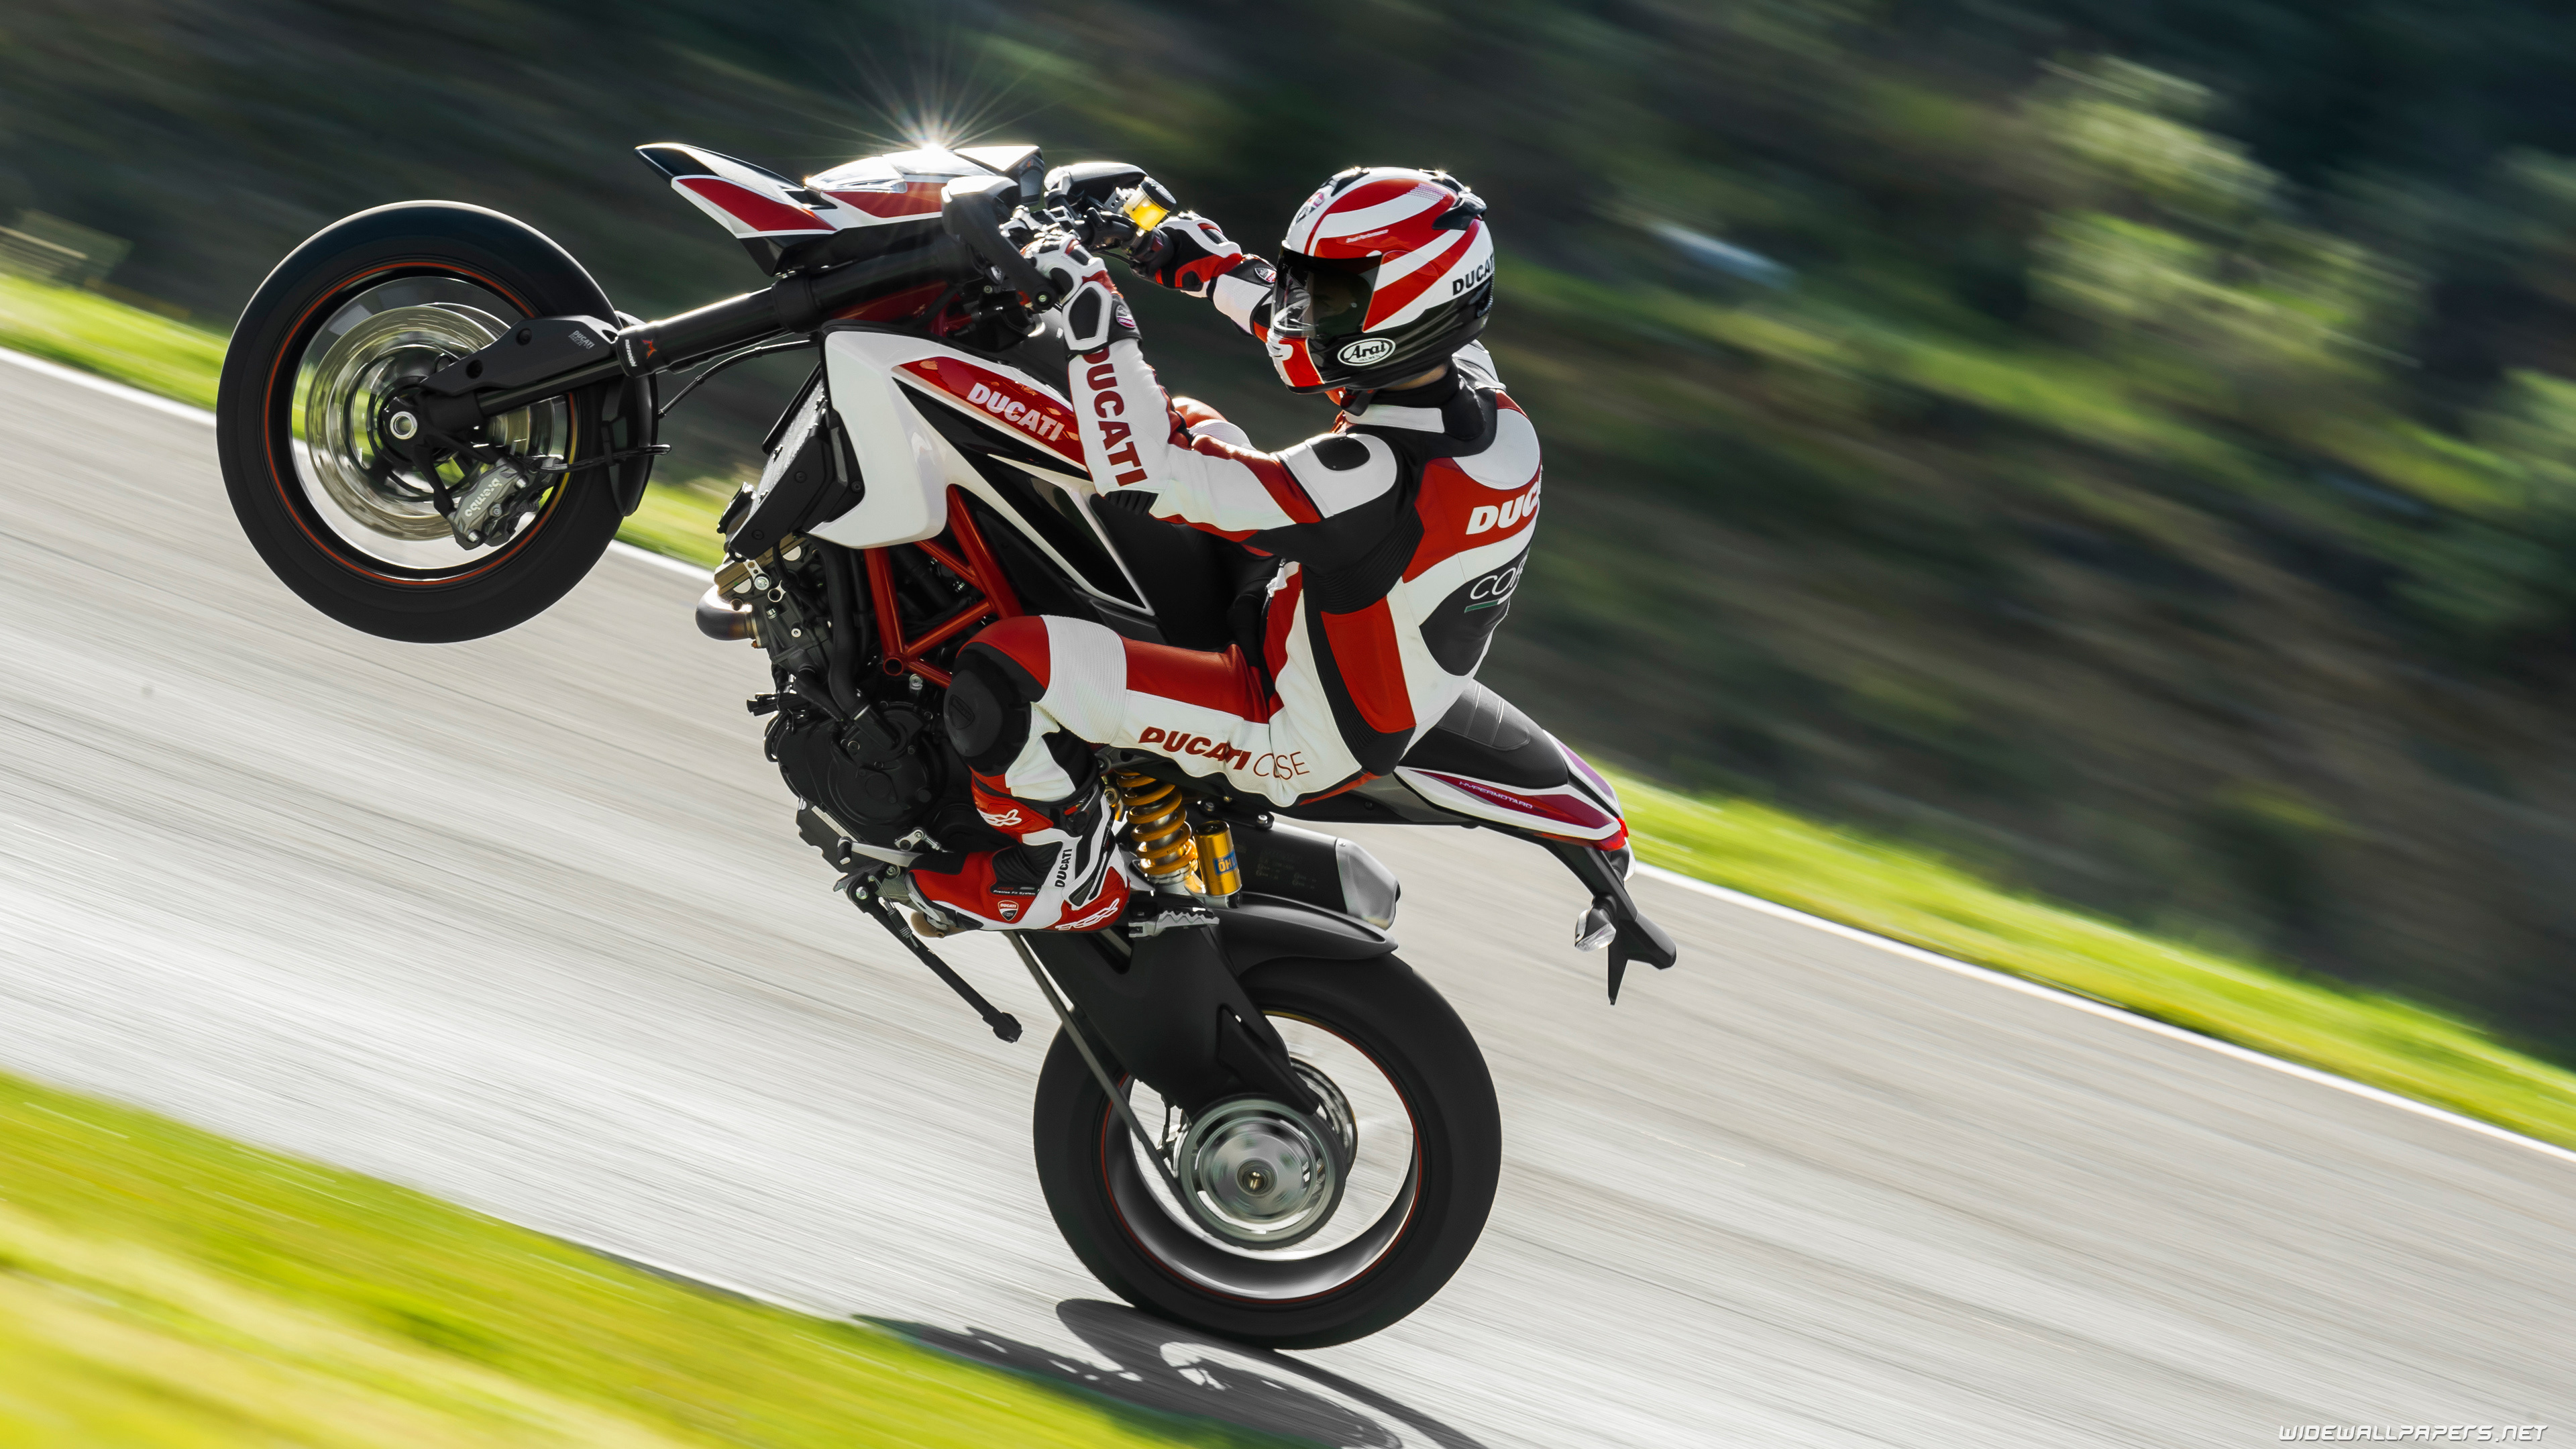 Stunt: Ducati Hypermotard motorcycle, Stuntman doing wheelstand. 3840x2160 4K Background.